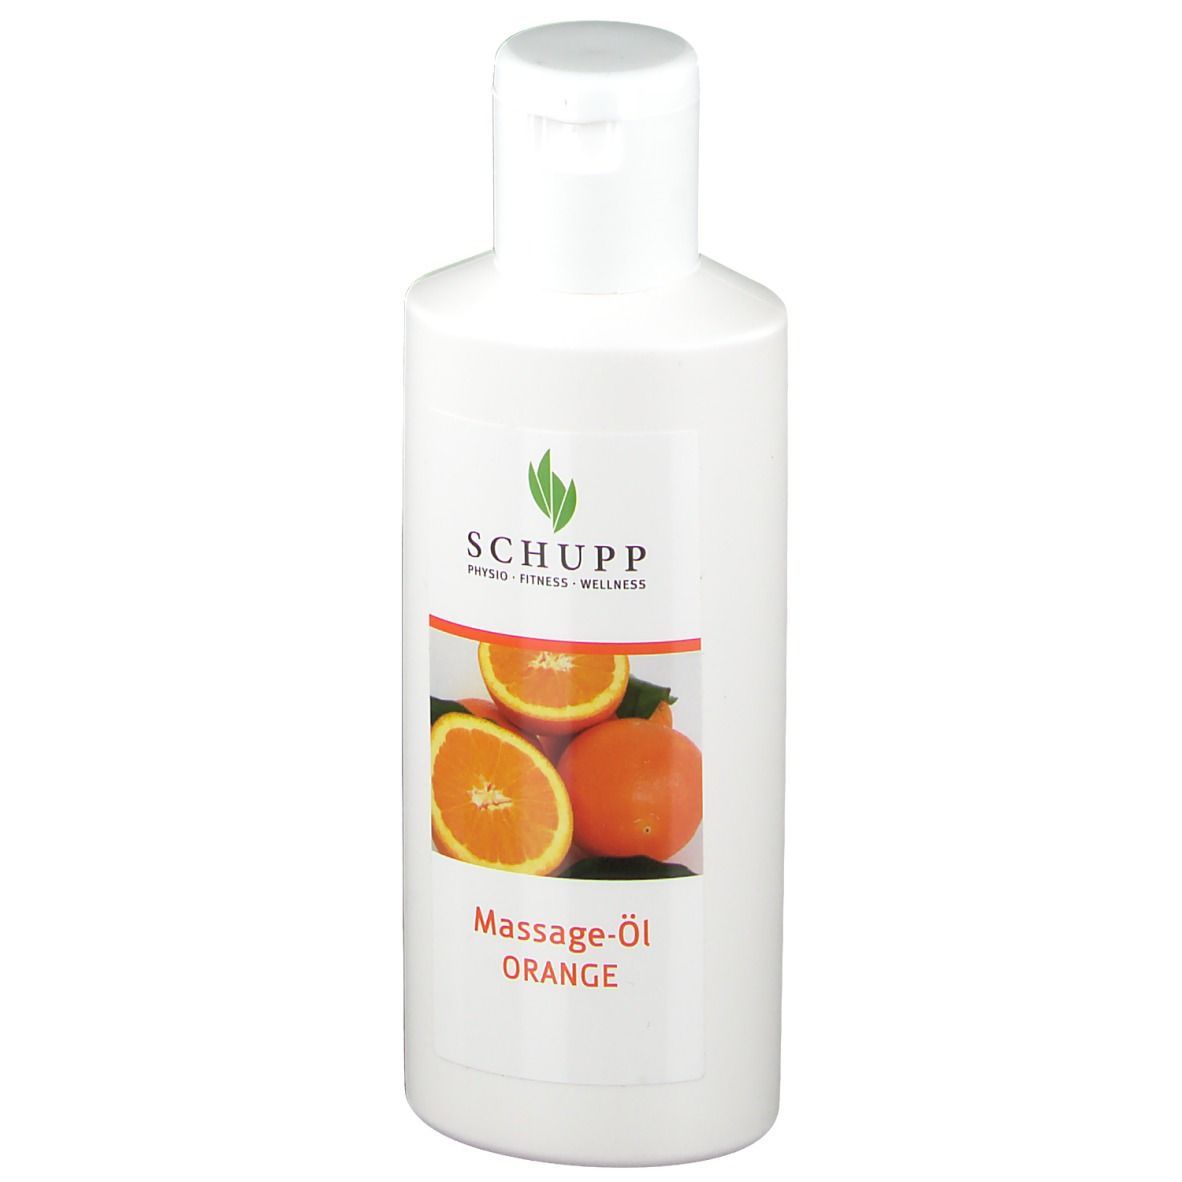 SCHUPP Massageöl Orange